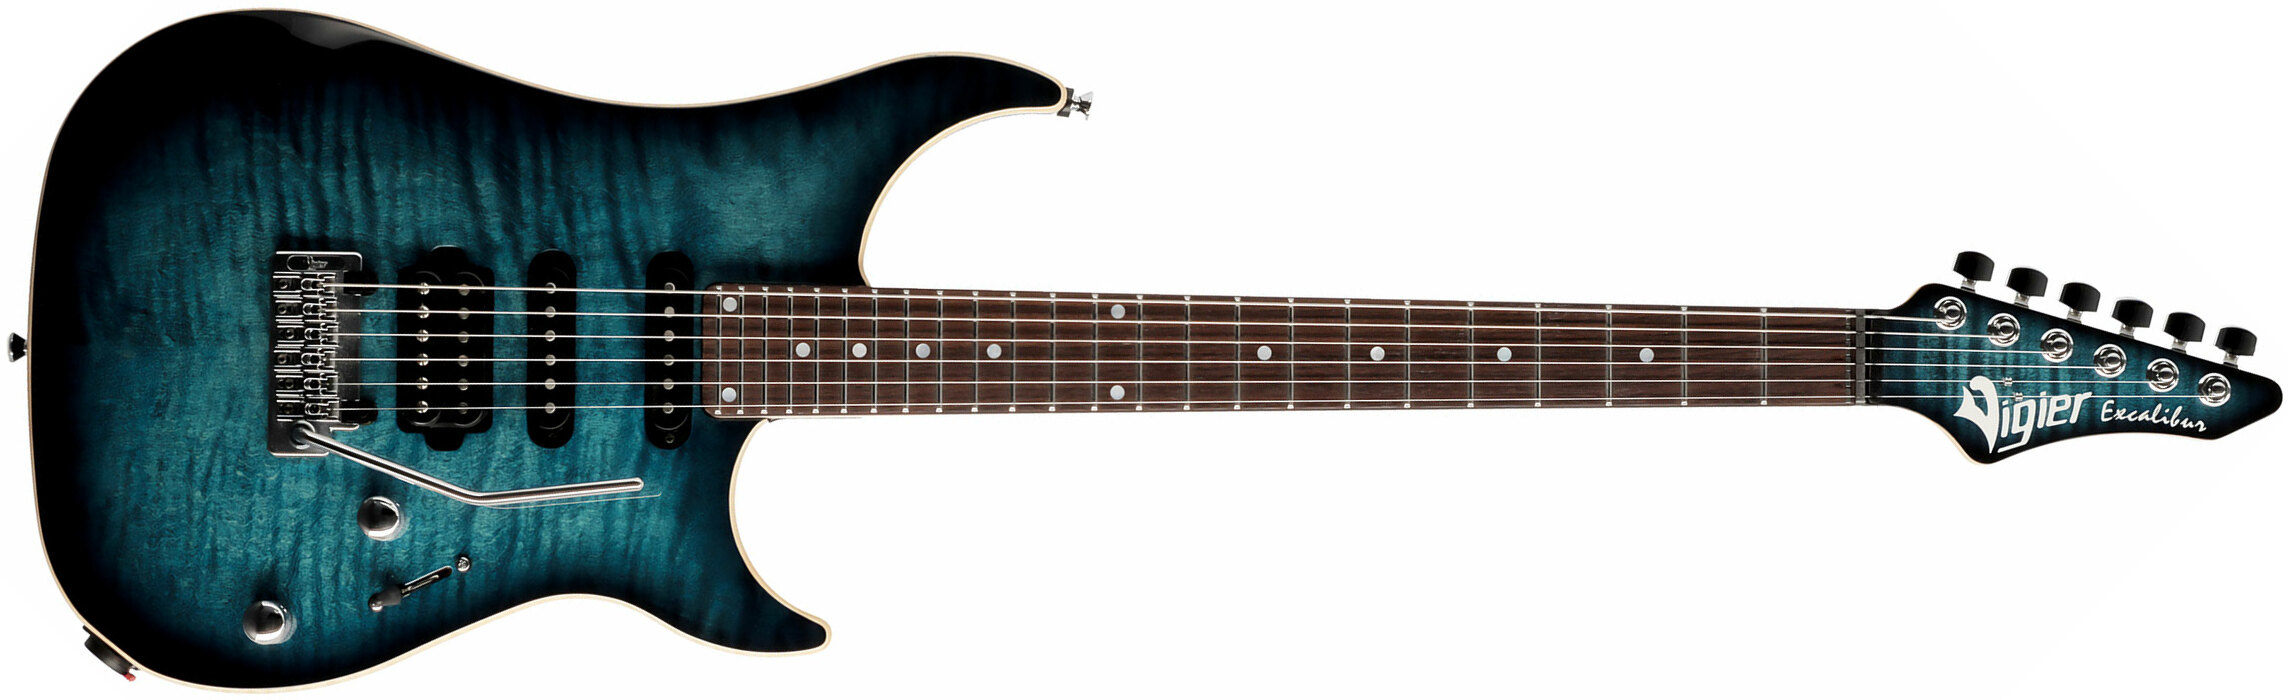 Vigier Excalibur Ultra Blues Hss Trem Rw - Mysterious Blue - Str shape electric guitar - Main picture